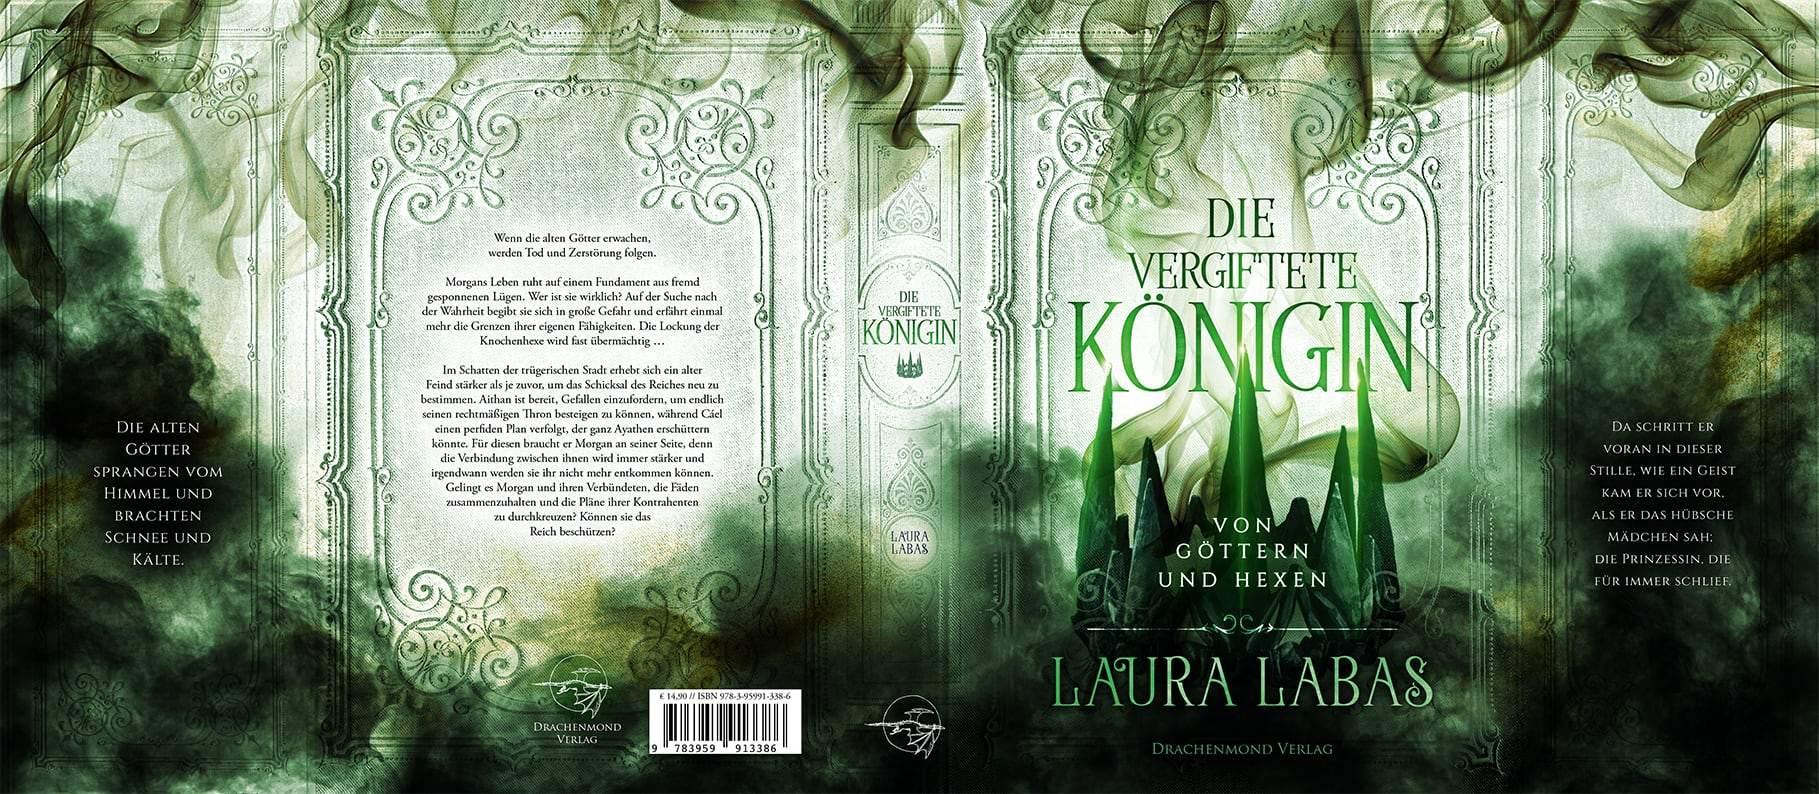 Die vergiftete Königin - Von Göttern und Hexen - Laura Labas | Drachenmond Verlag